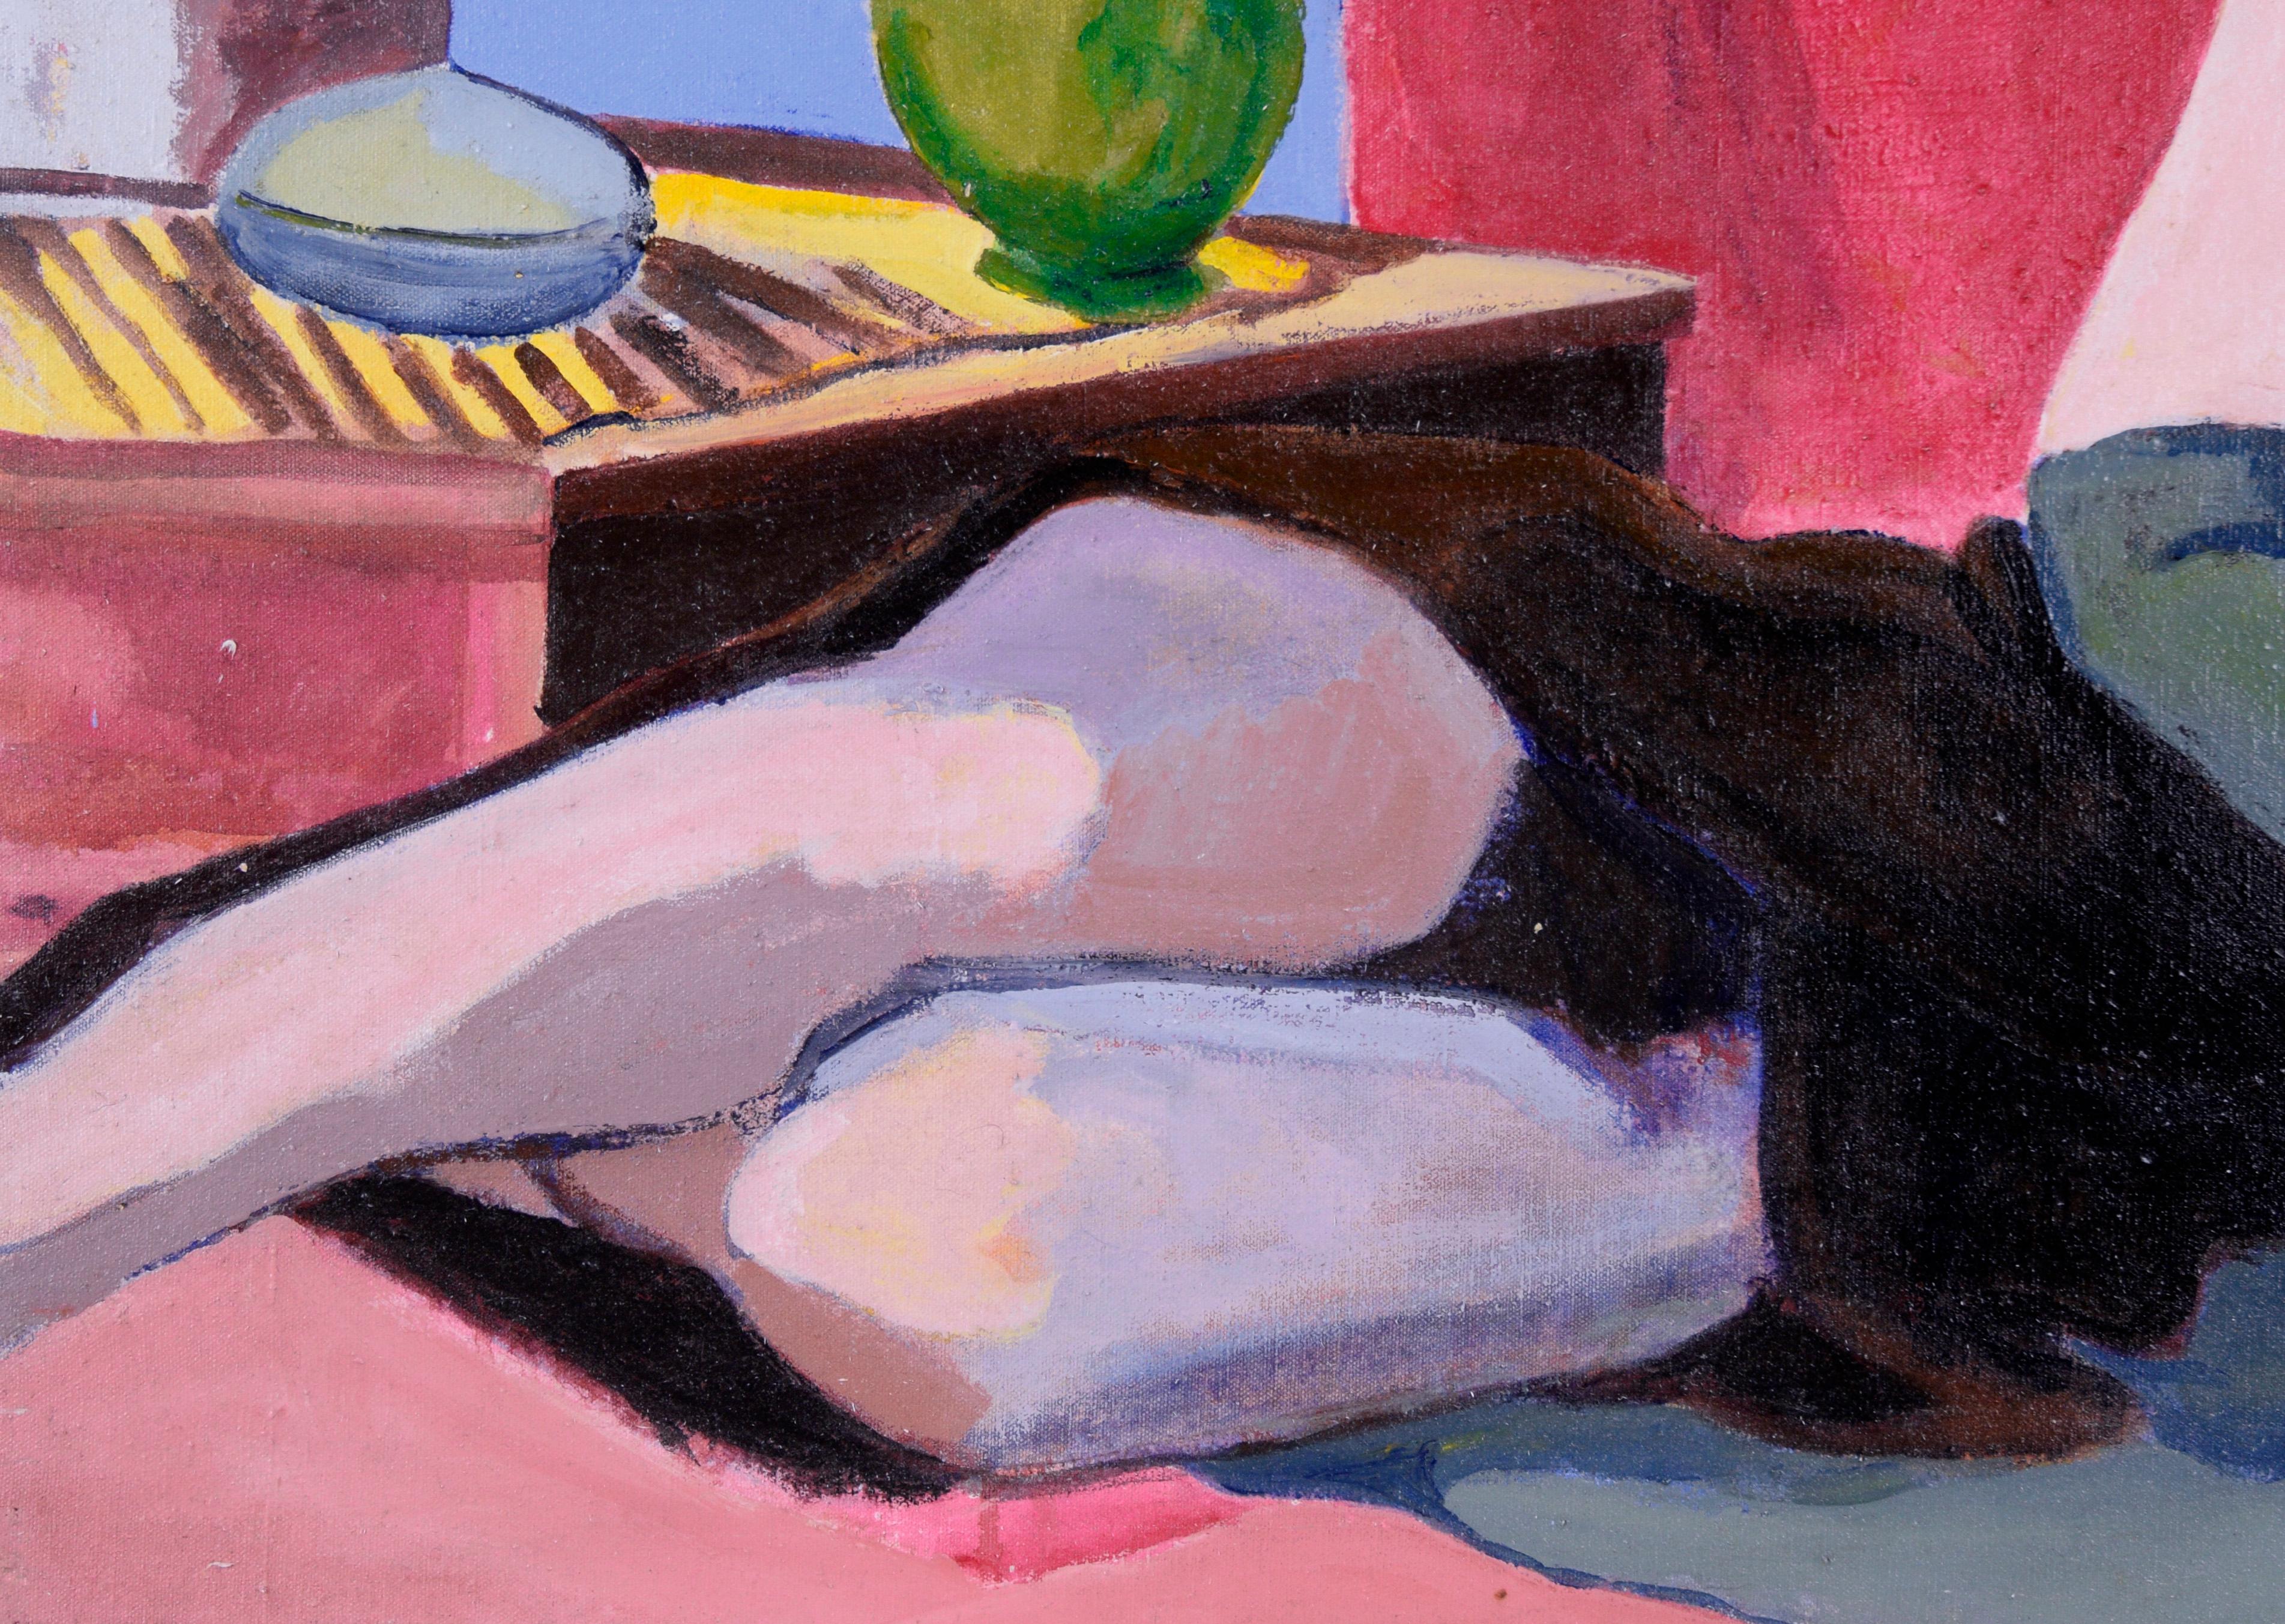 Frau mit rotem Hut – Figurative Studie, Öl auf Leinwand – Painting von Patricia Gren Hayes